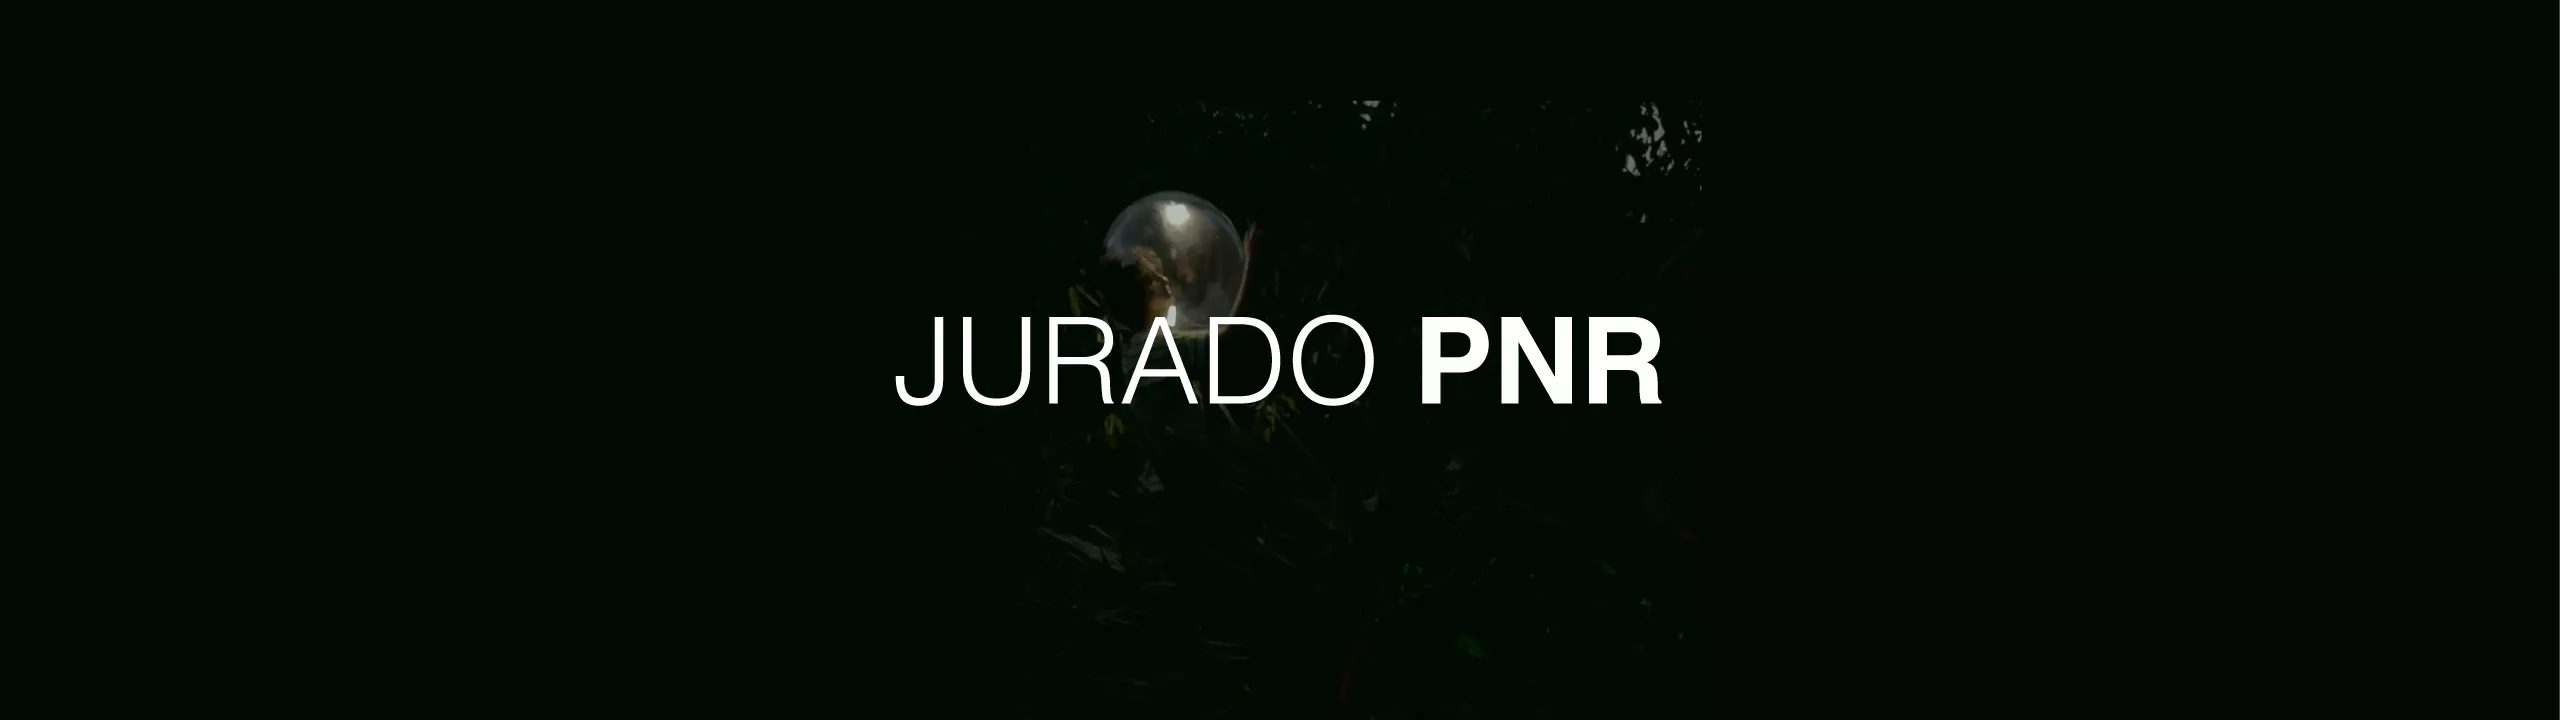 JURADO PNR